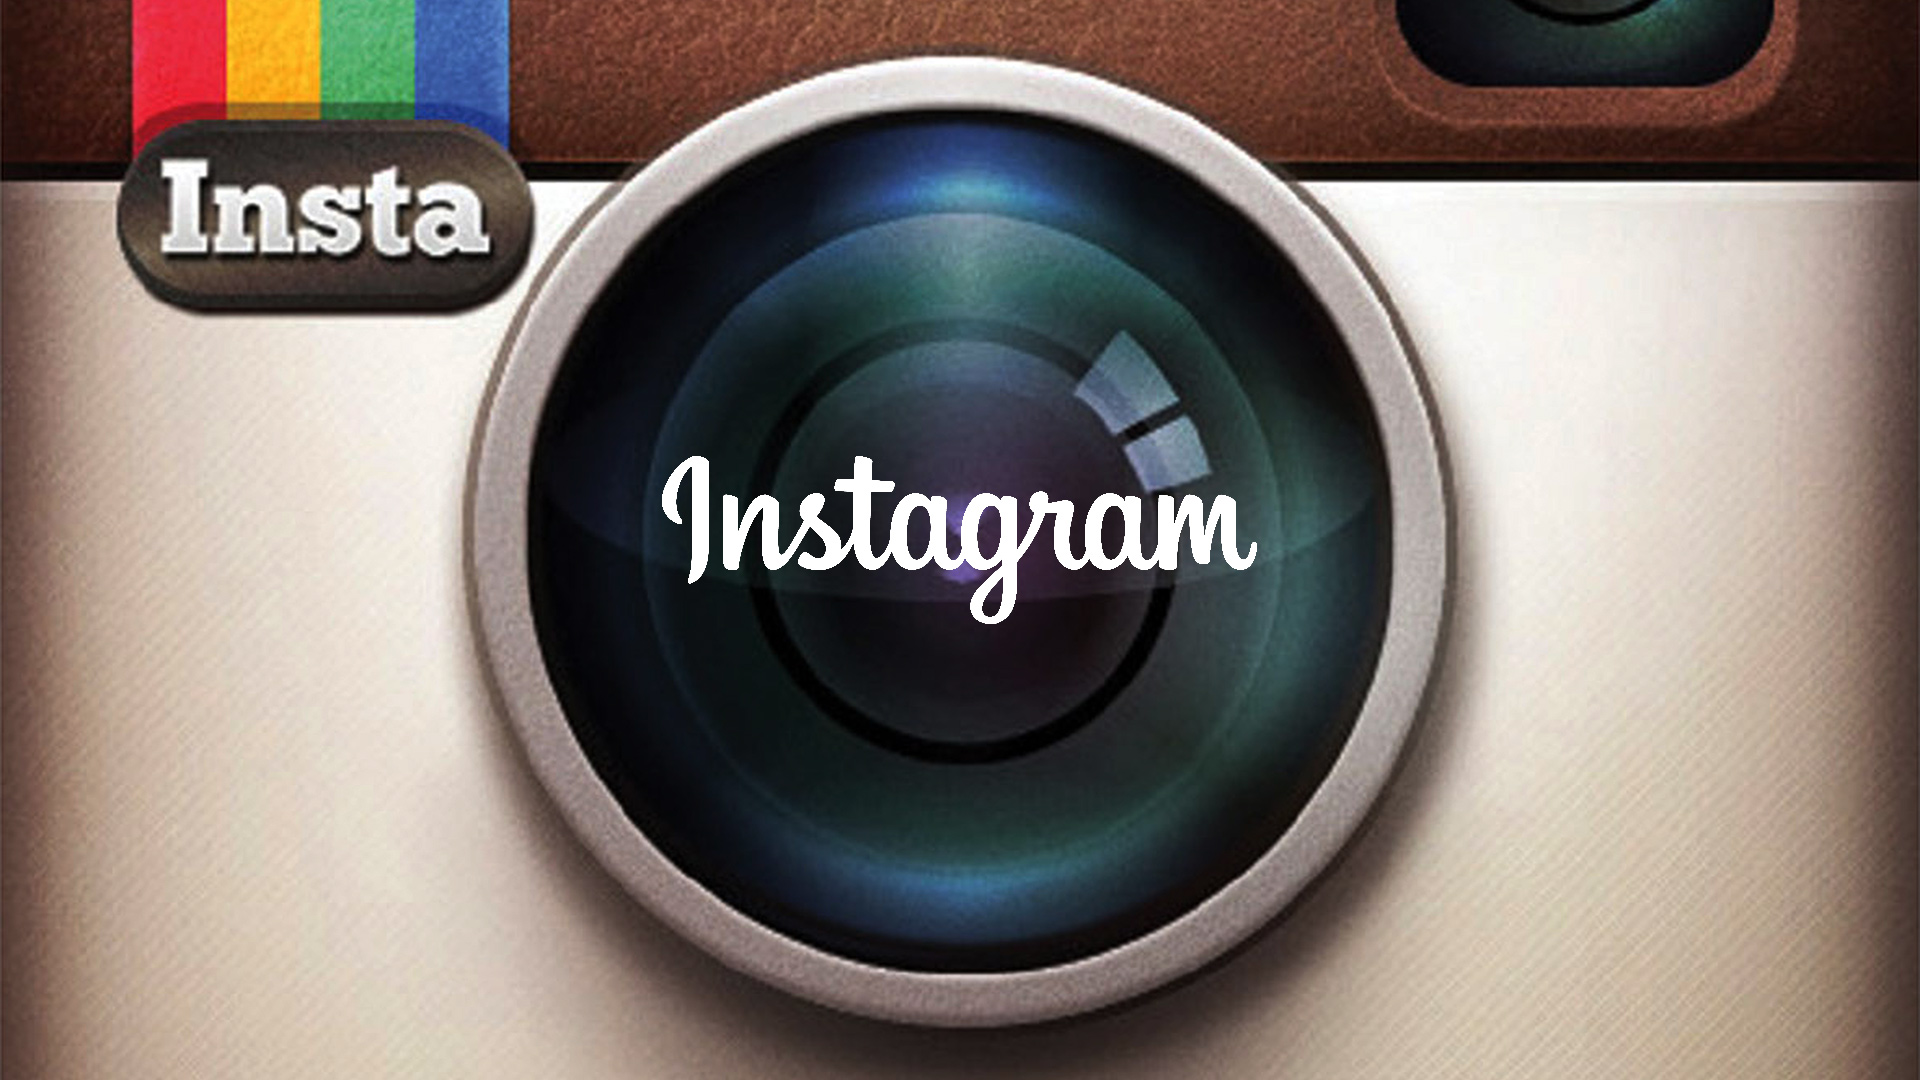 Aggiornamento totale per Instagram su iPhone: ecco le novità